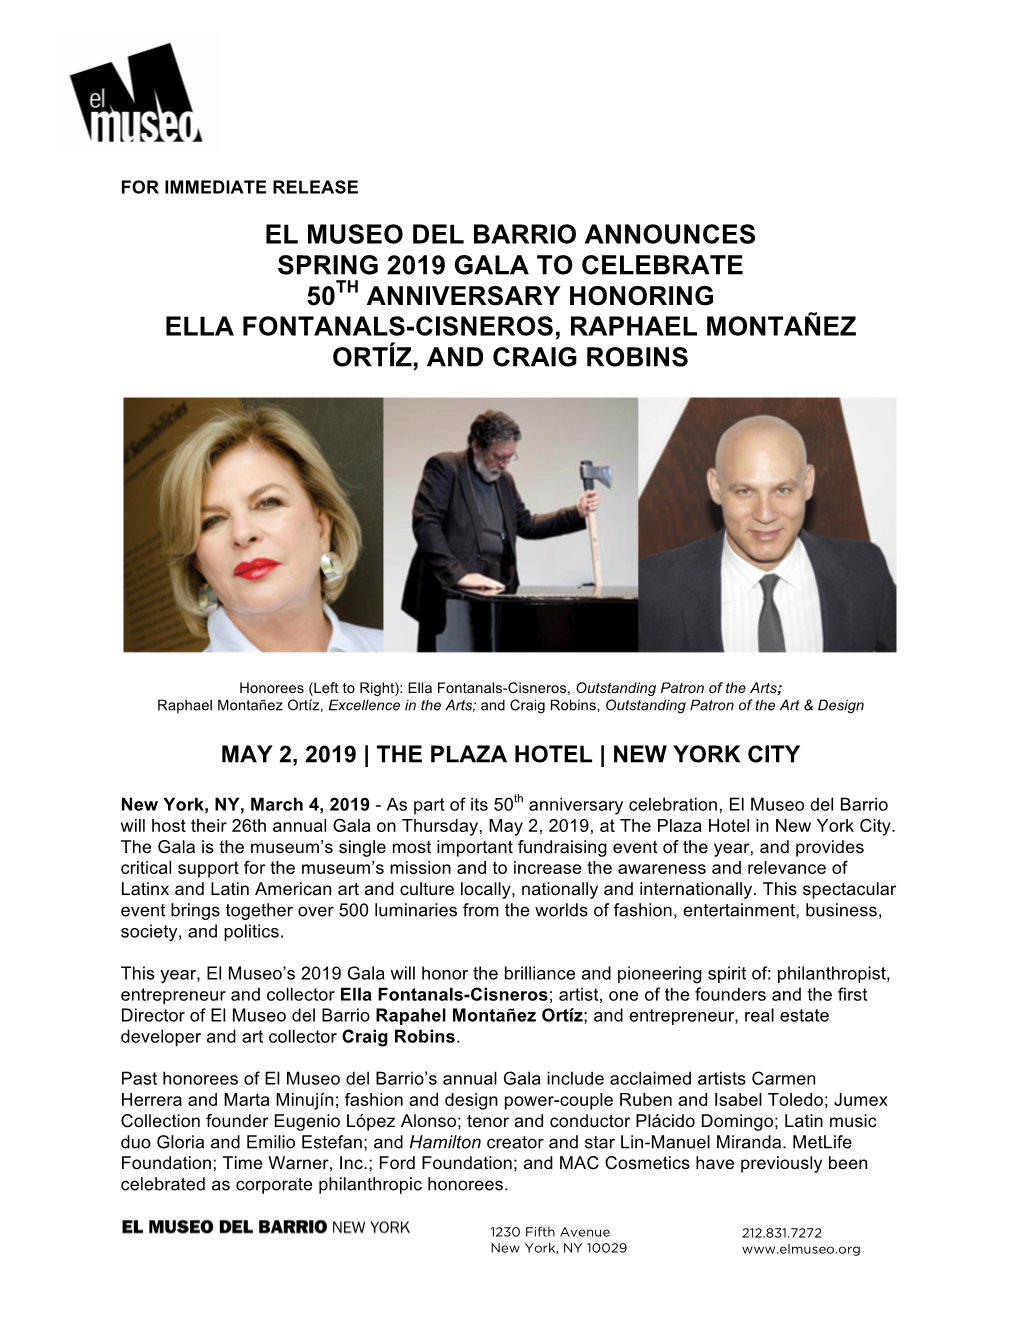 El Museo Del Barrio Announces Spring 2019 Gala to Celebrate 50Th Anniversary Honoring Ella Fontanals-Cisneros, Raphael Montañez Ortíz, and Craig Robins